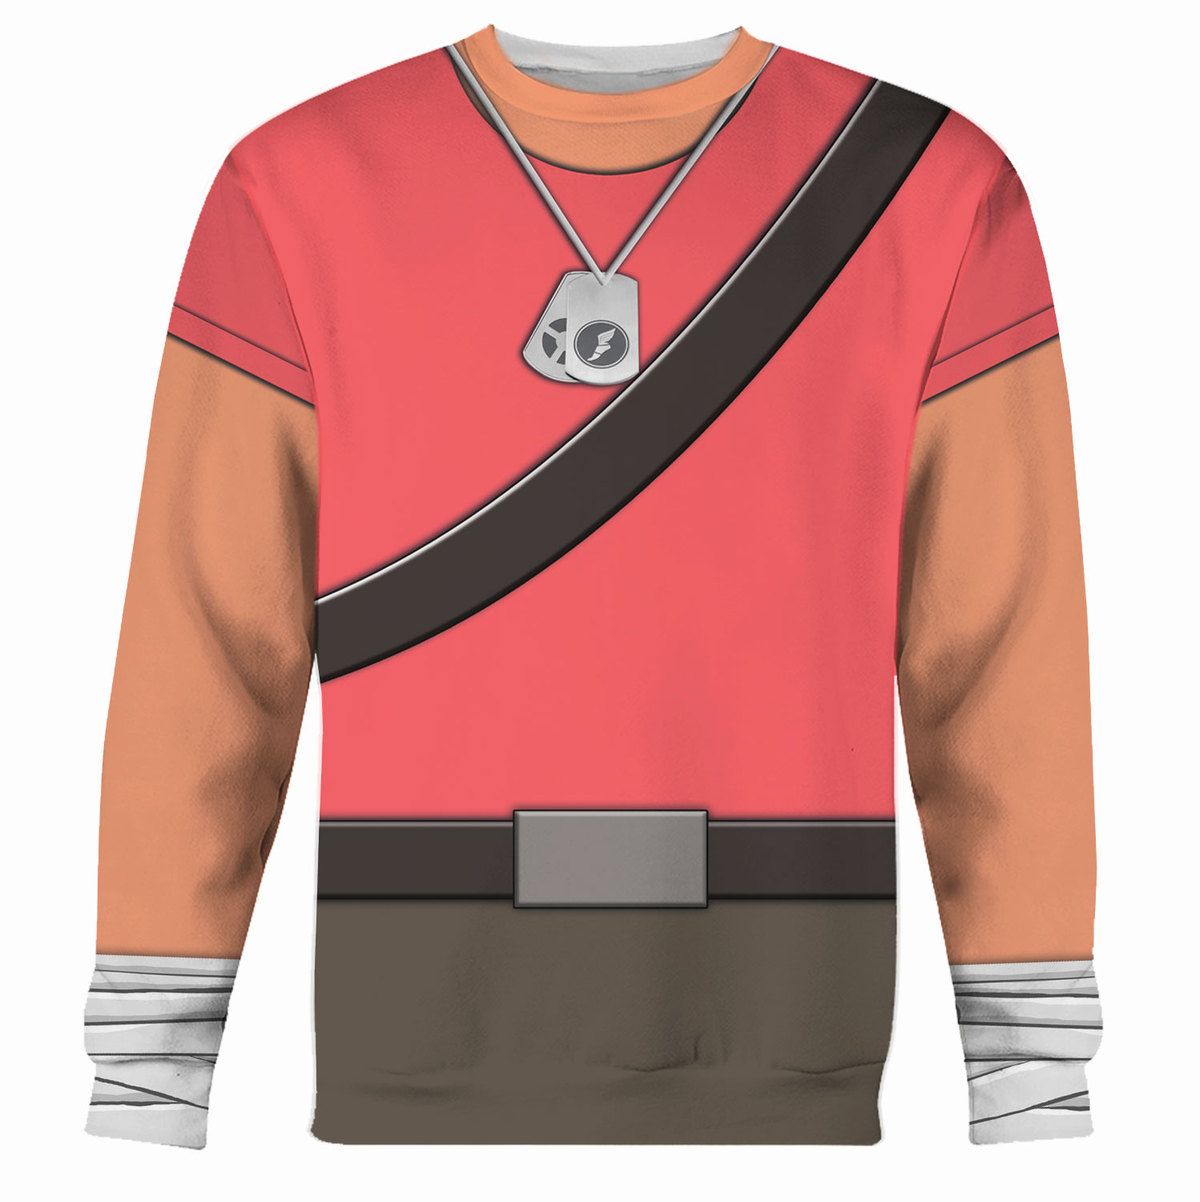 Scout TF2 sweatshirt